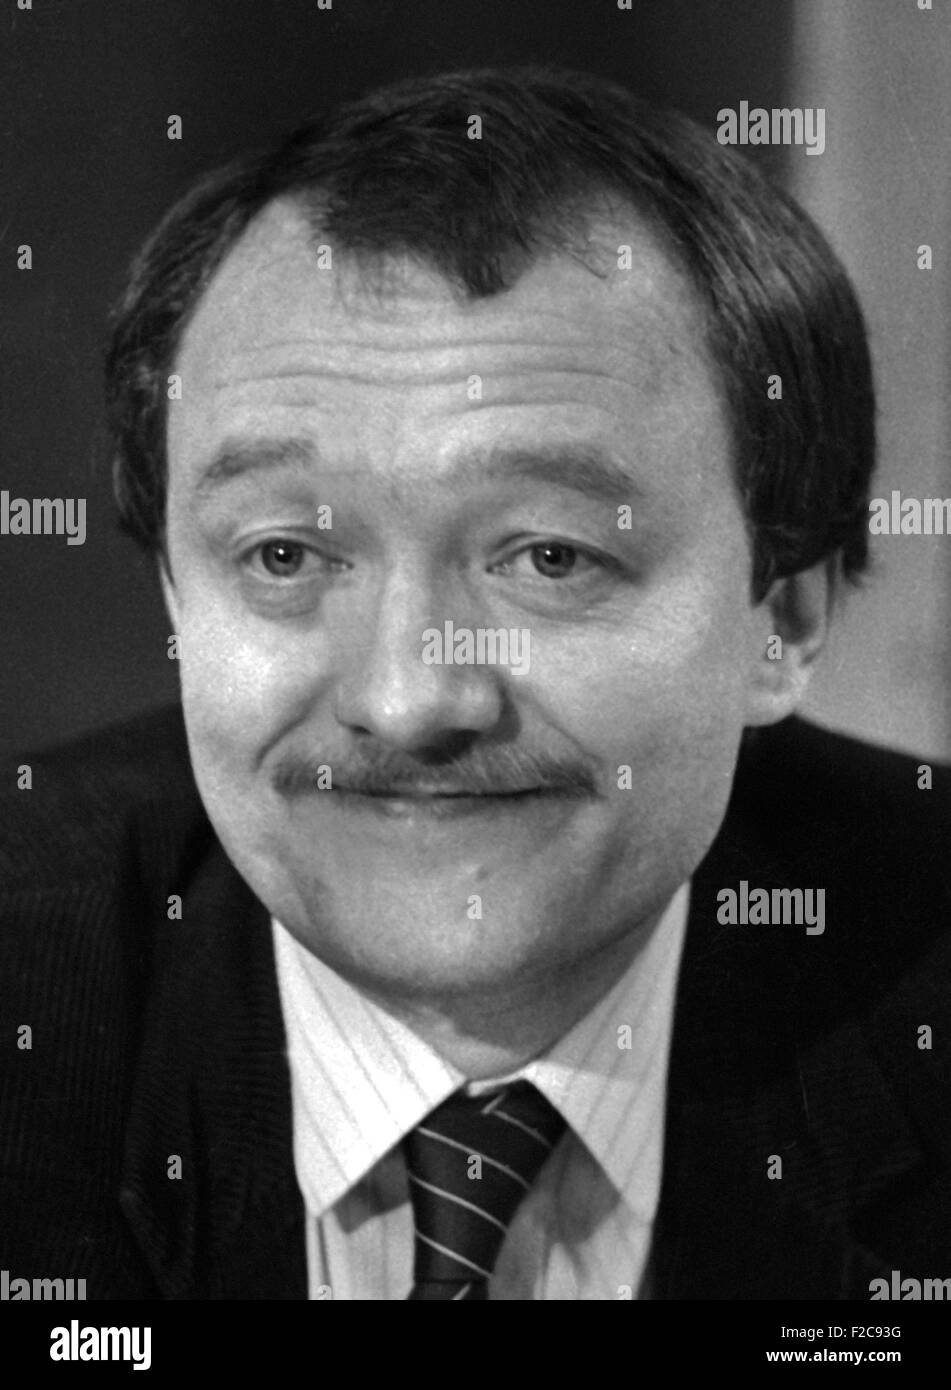 Ken Kenneth Robert Livingstone (nato il 17 giugno 1945) è un cittadino britannico di manodopera/politico socialista servita sindaco di Londra. - Immagine 1984 Foto Stock